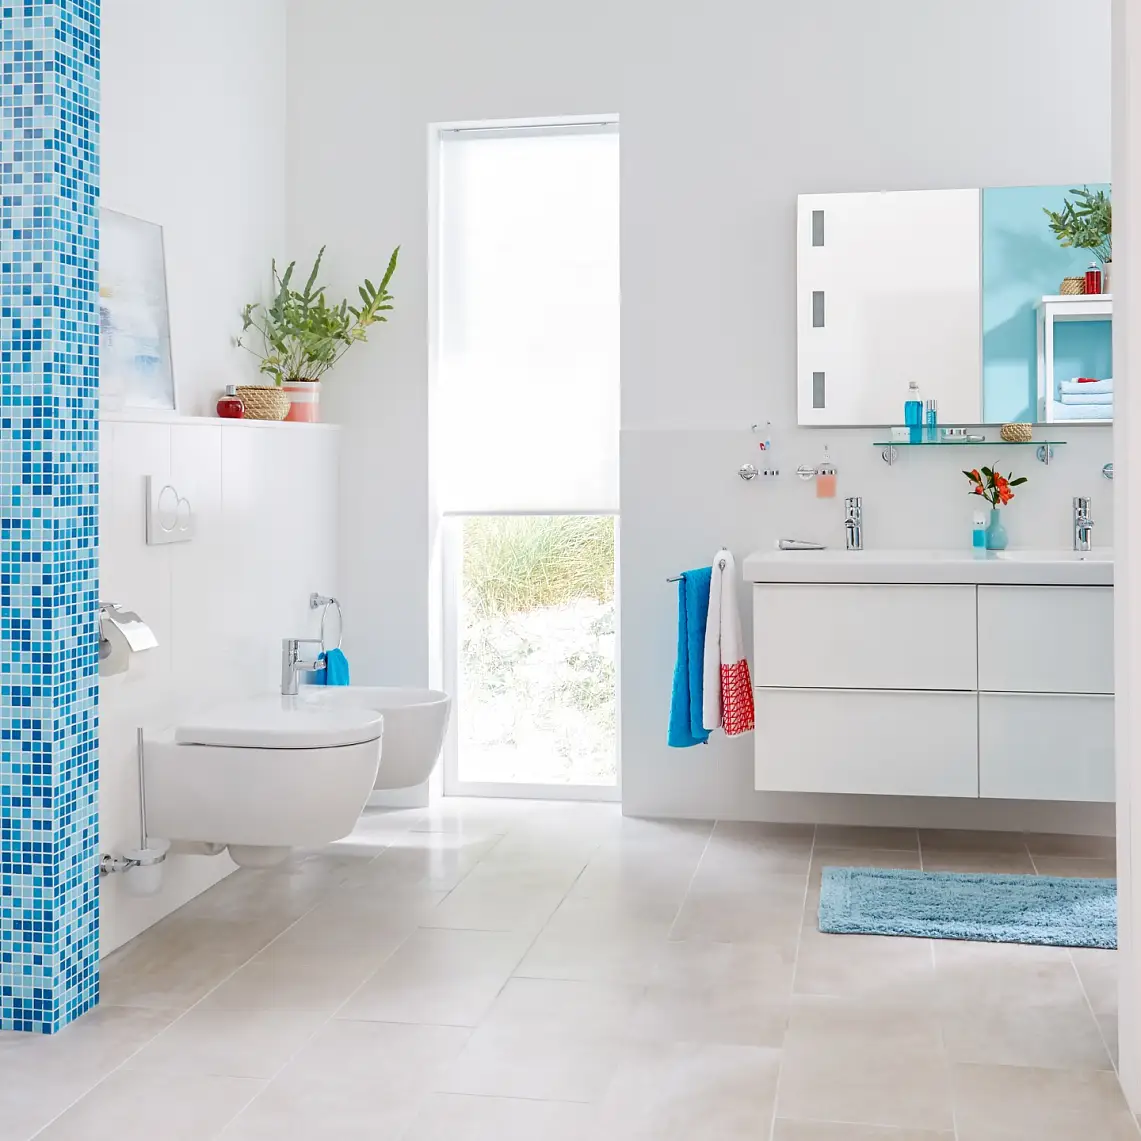 Dodajte svojej kúpeľni dotyk jednoduchosti s praktickým dizajnom.